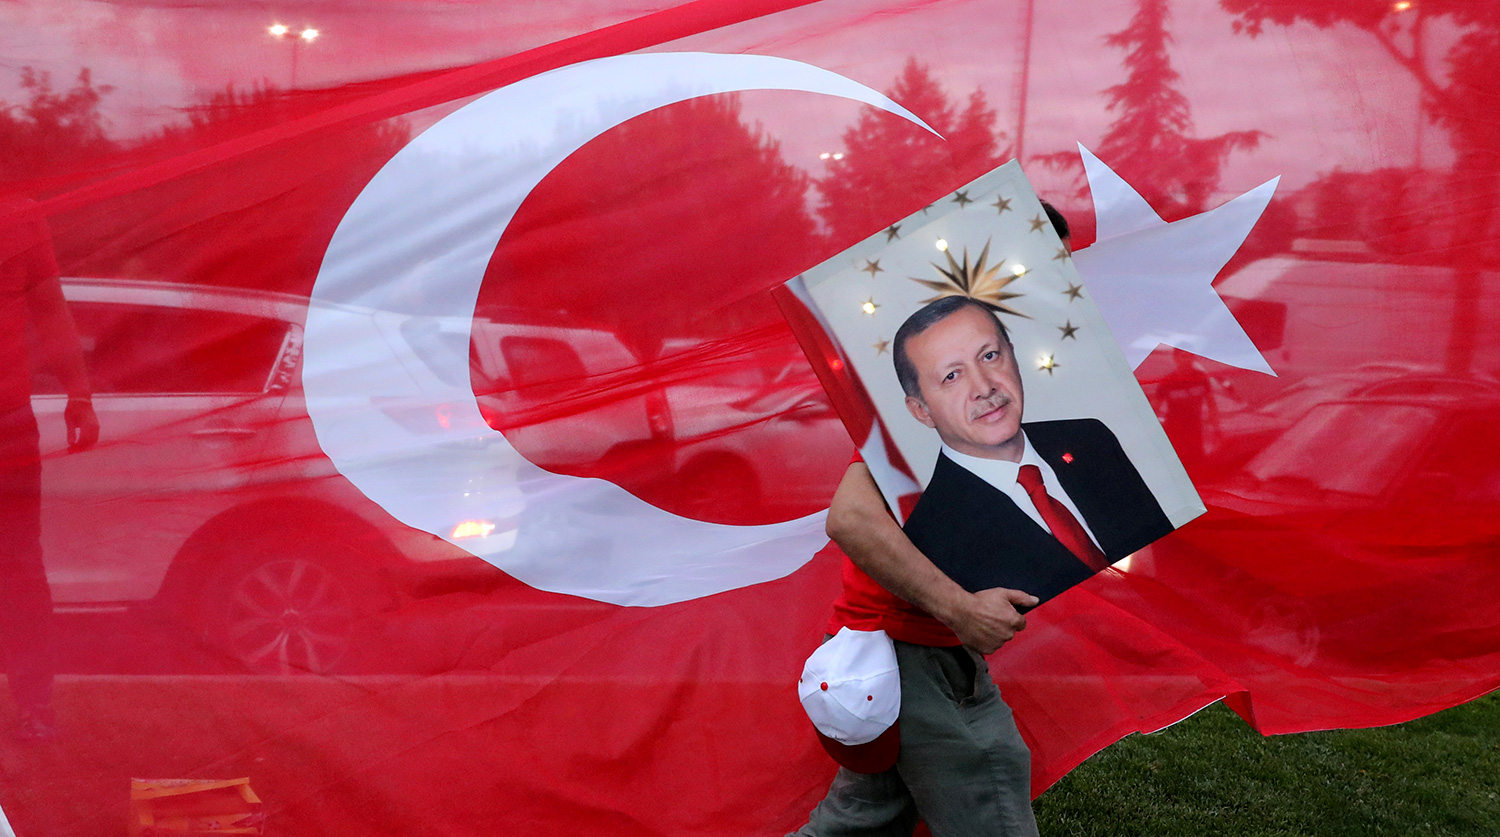 Партия Эрдогана добилась отмены результатов проигранных выборов в Стамбуле